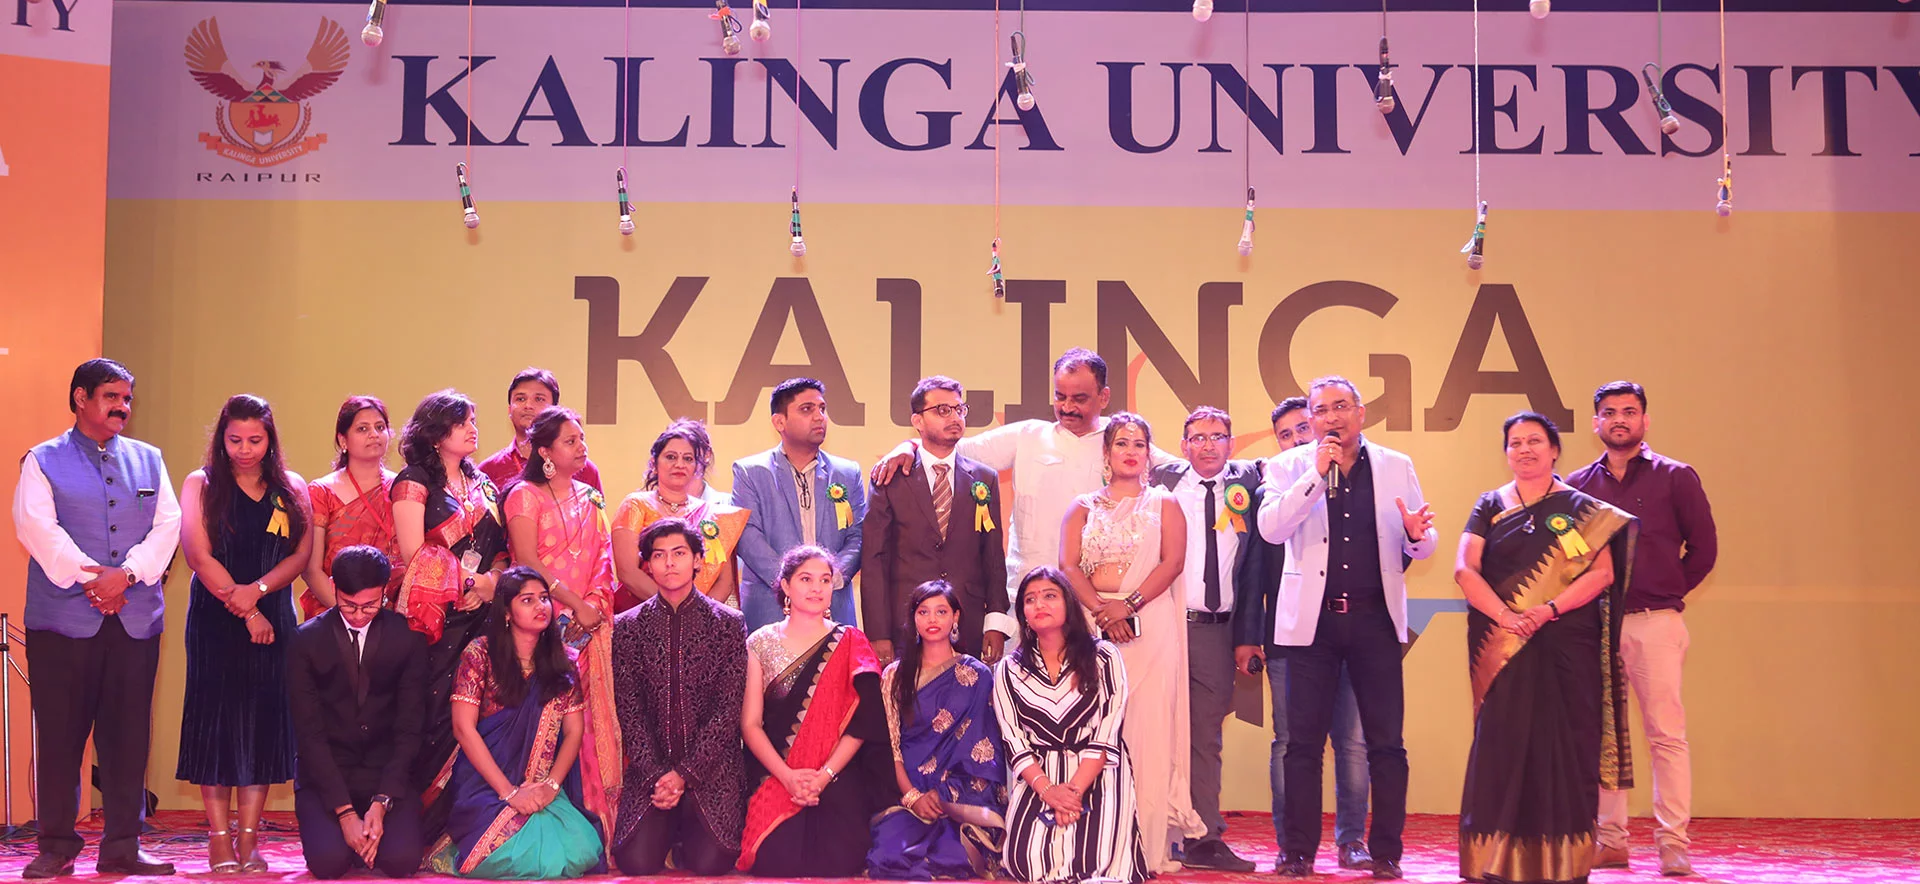 kalinga university in raipur 